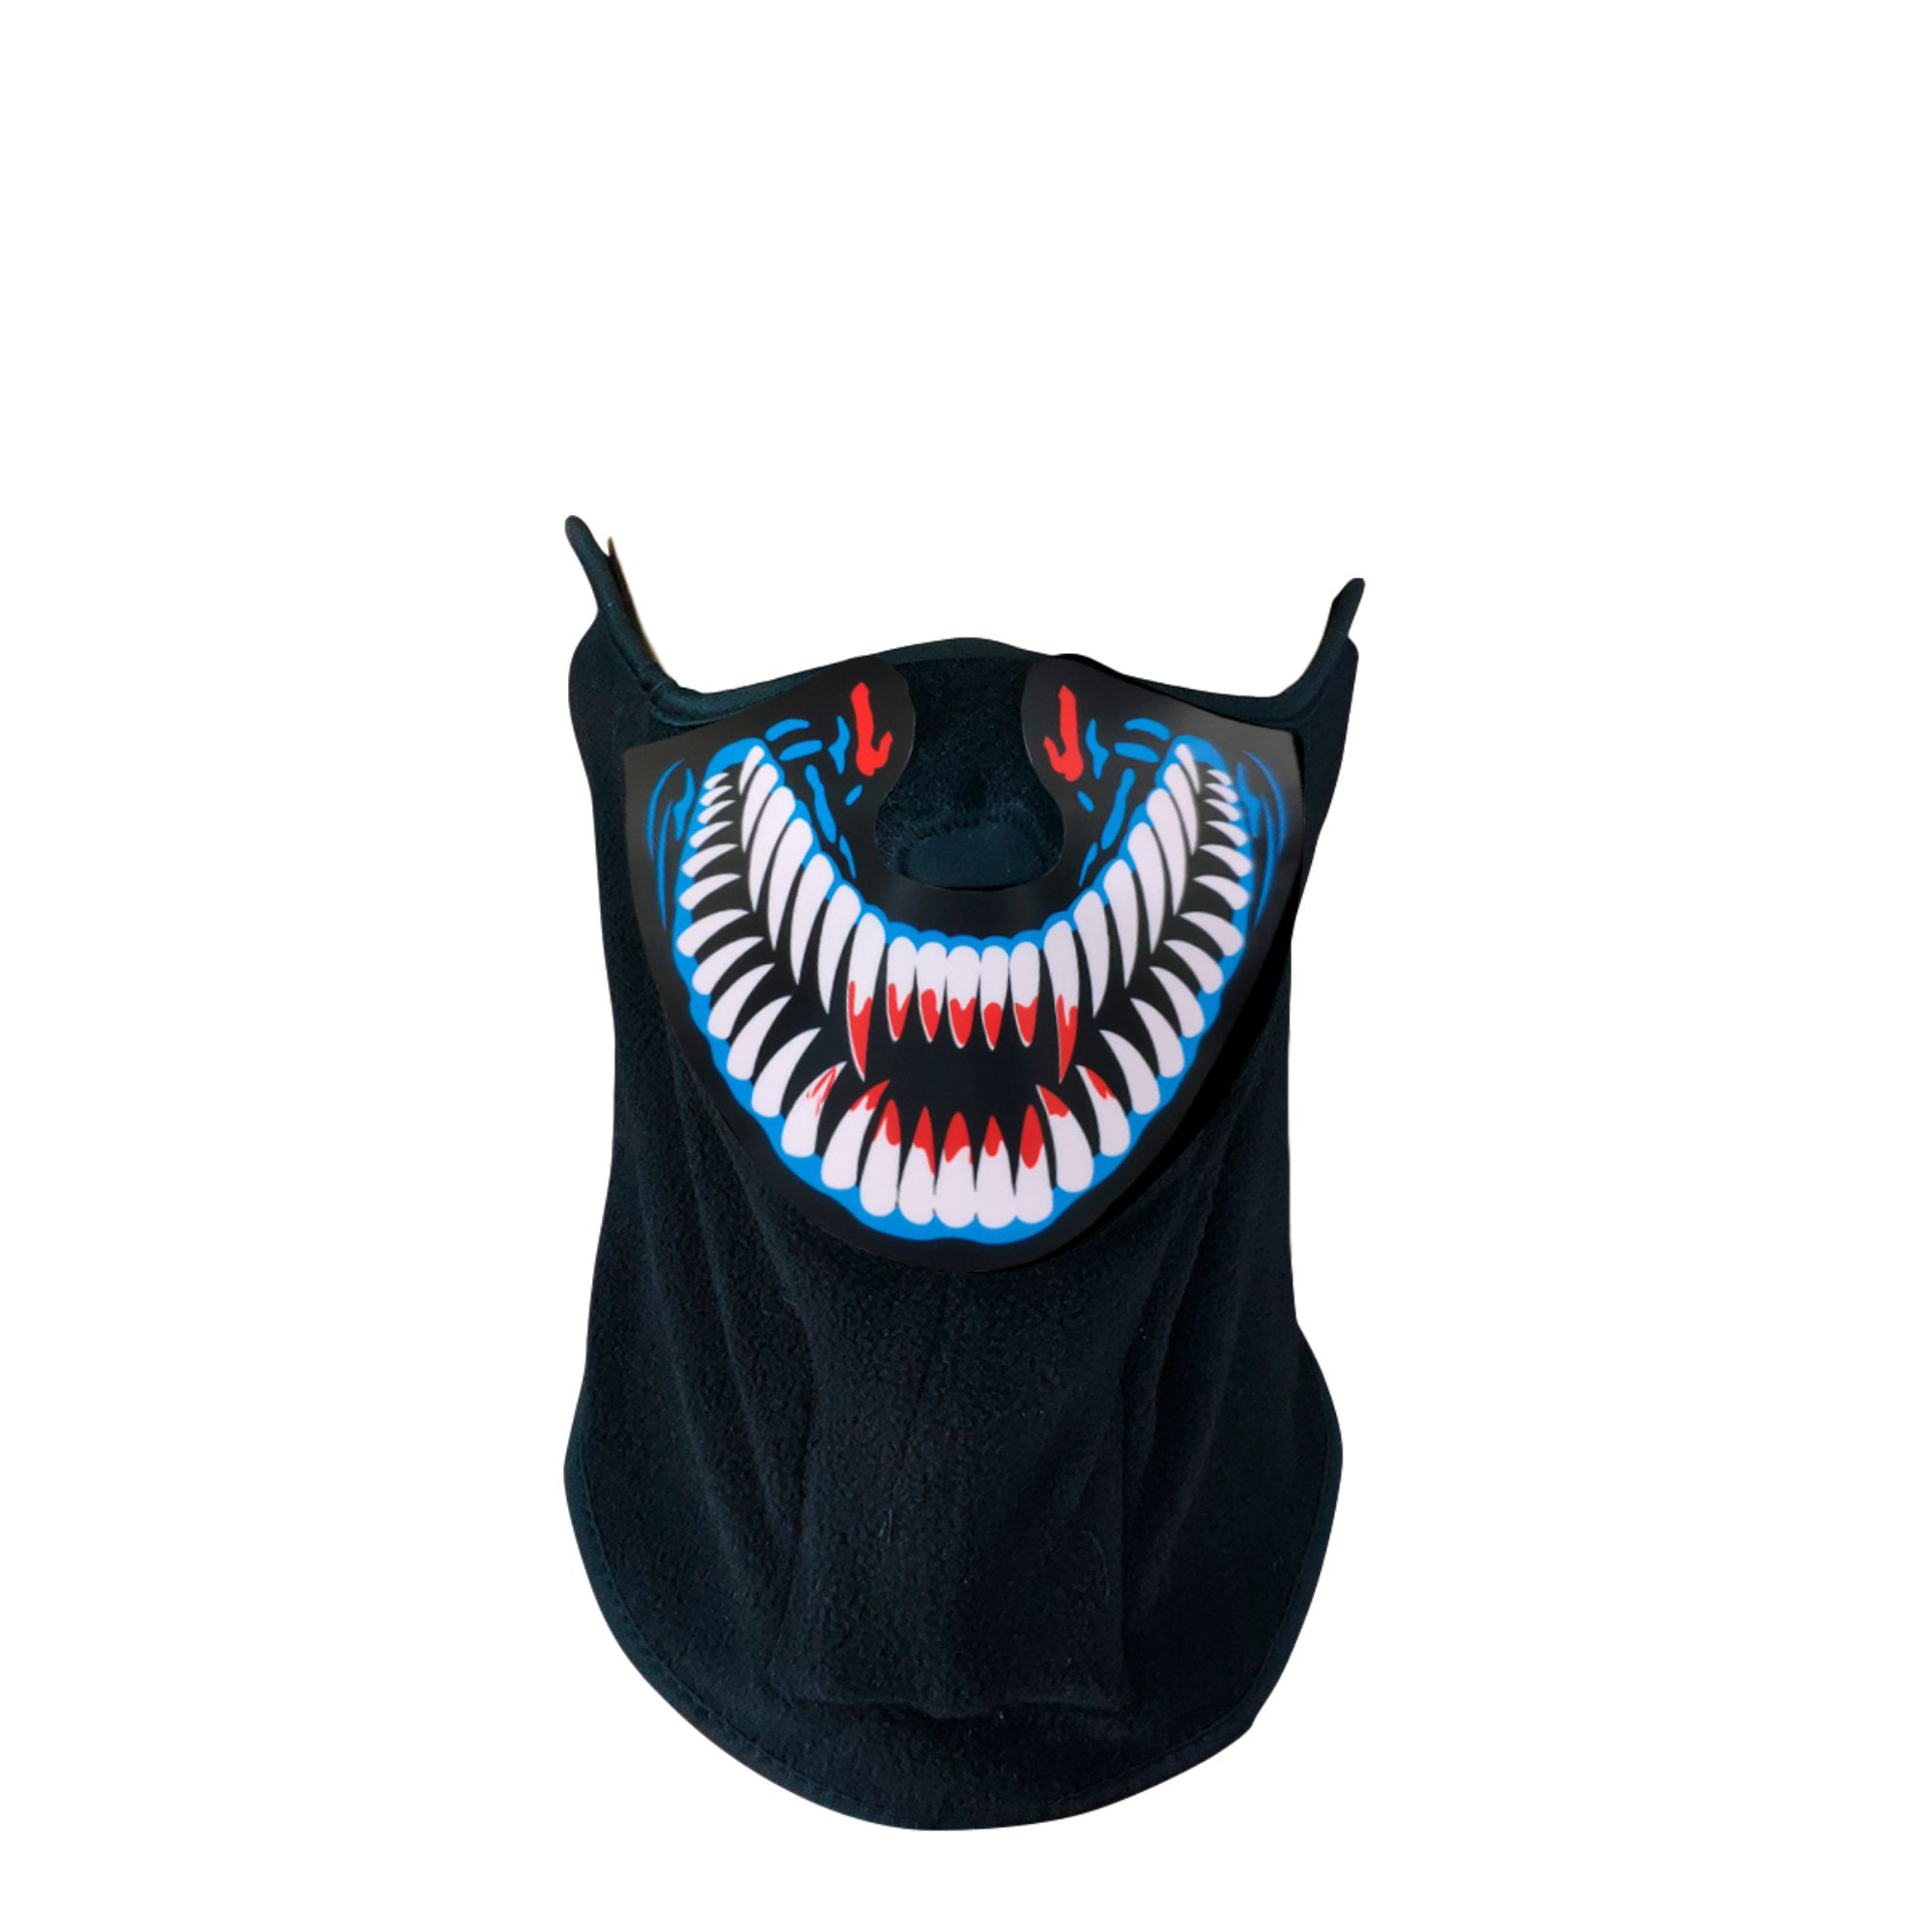 Sound activate Flashing LED Party Costume Mask Bandana US  Free SHIPPING! 